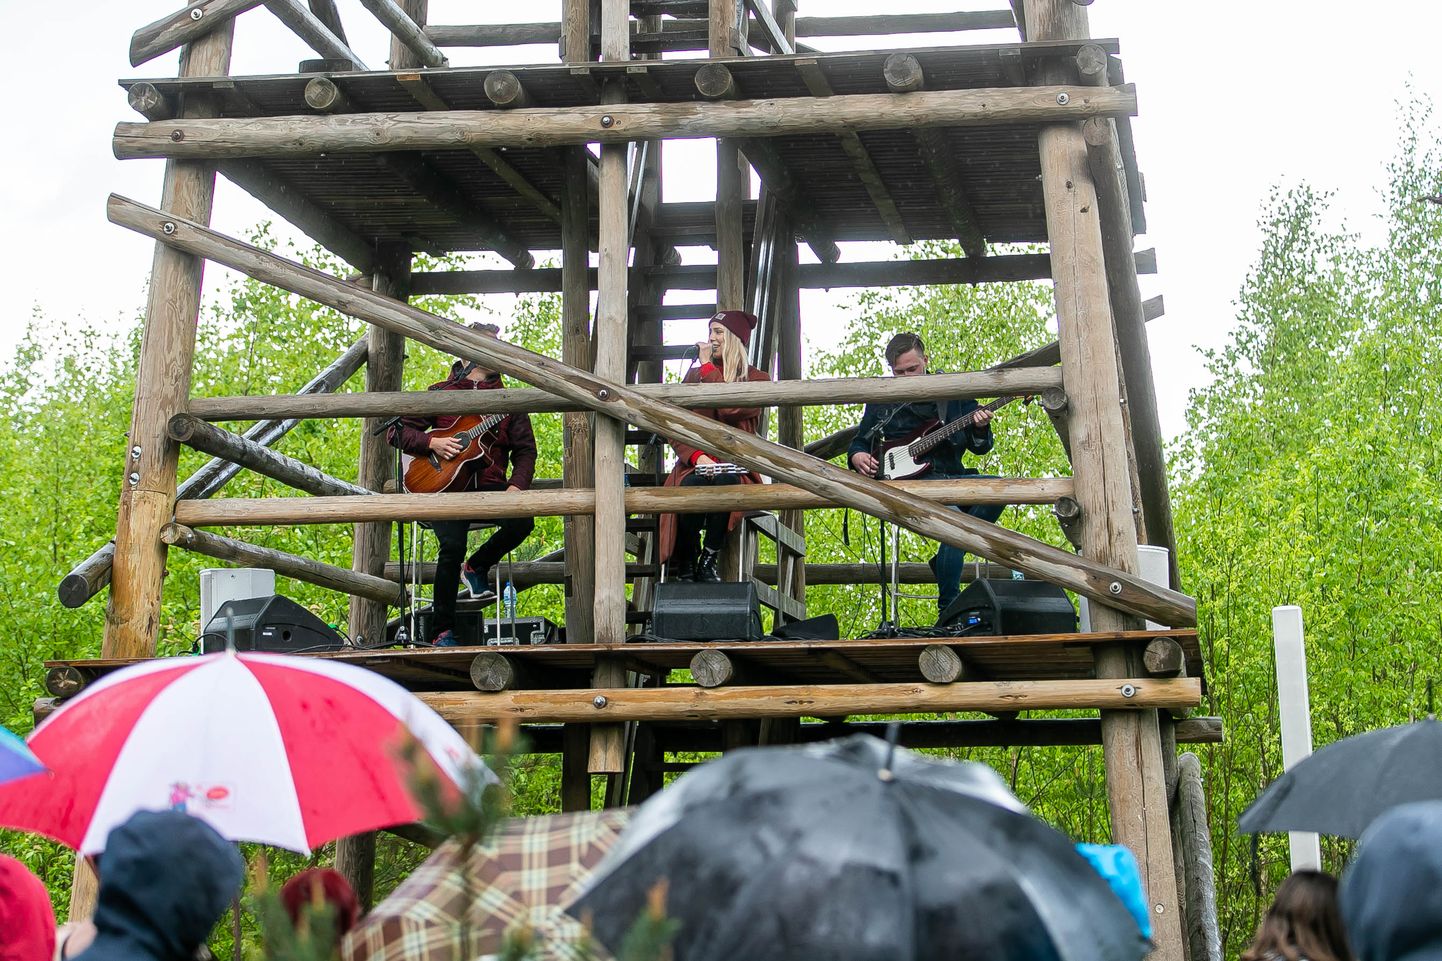 2019. aastal andis Pääsküla rabatornis kontserdi Liis Lemsalu.

Liis Lemsalu trio performance  at Pääsküla bog
Foto: Madis Sinivee/Postimees Grupp